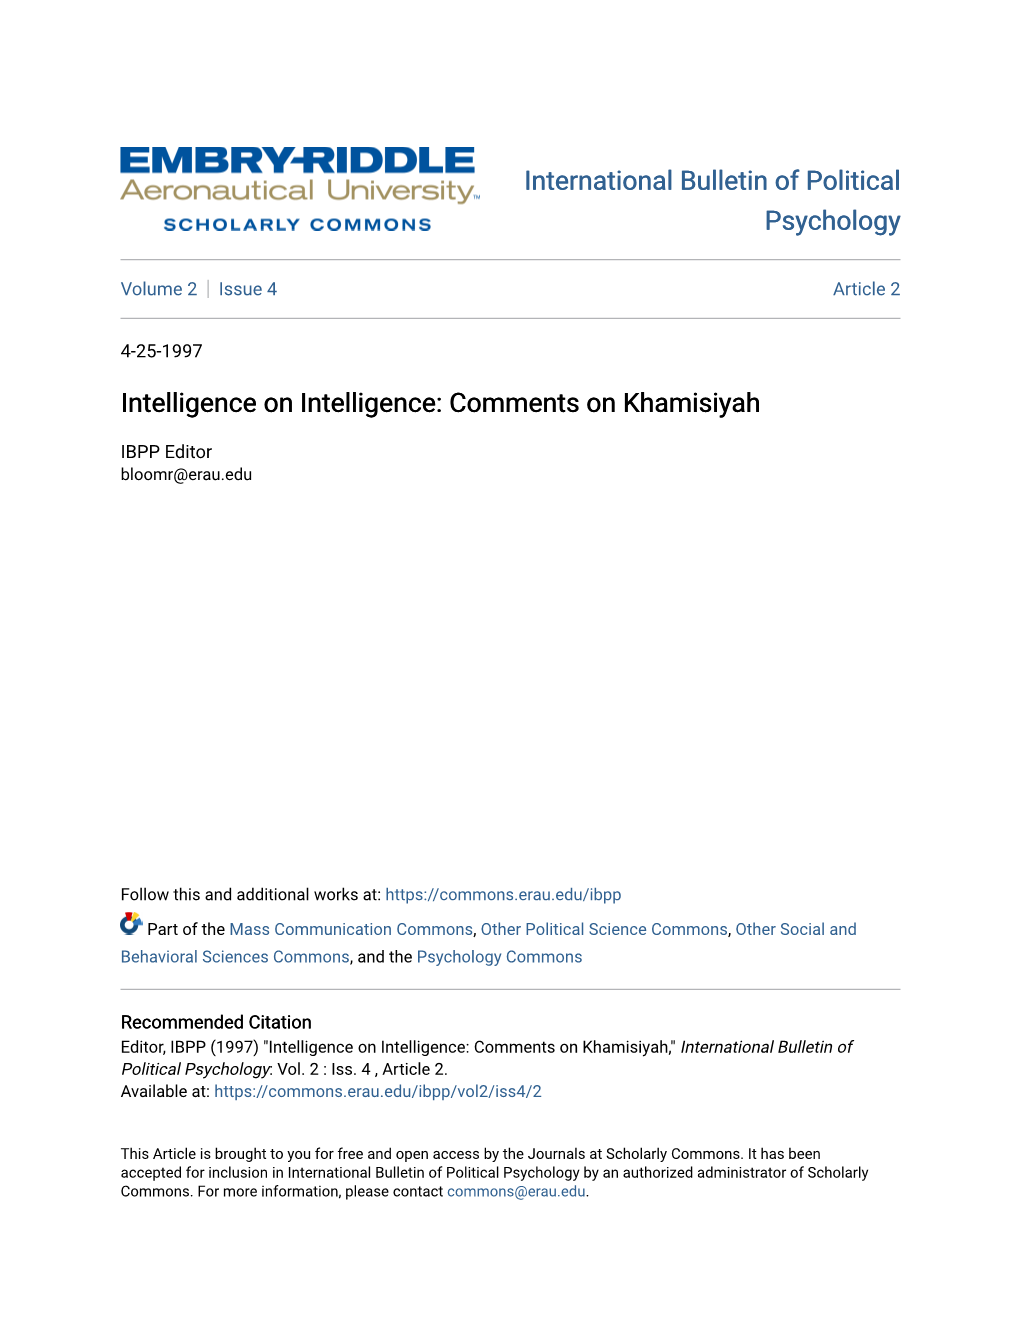 Intelligence on Intelligence: Comments on Khamisiyah